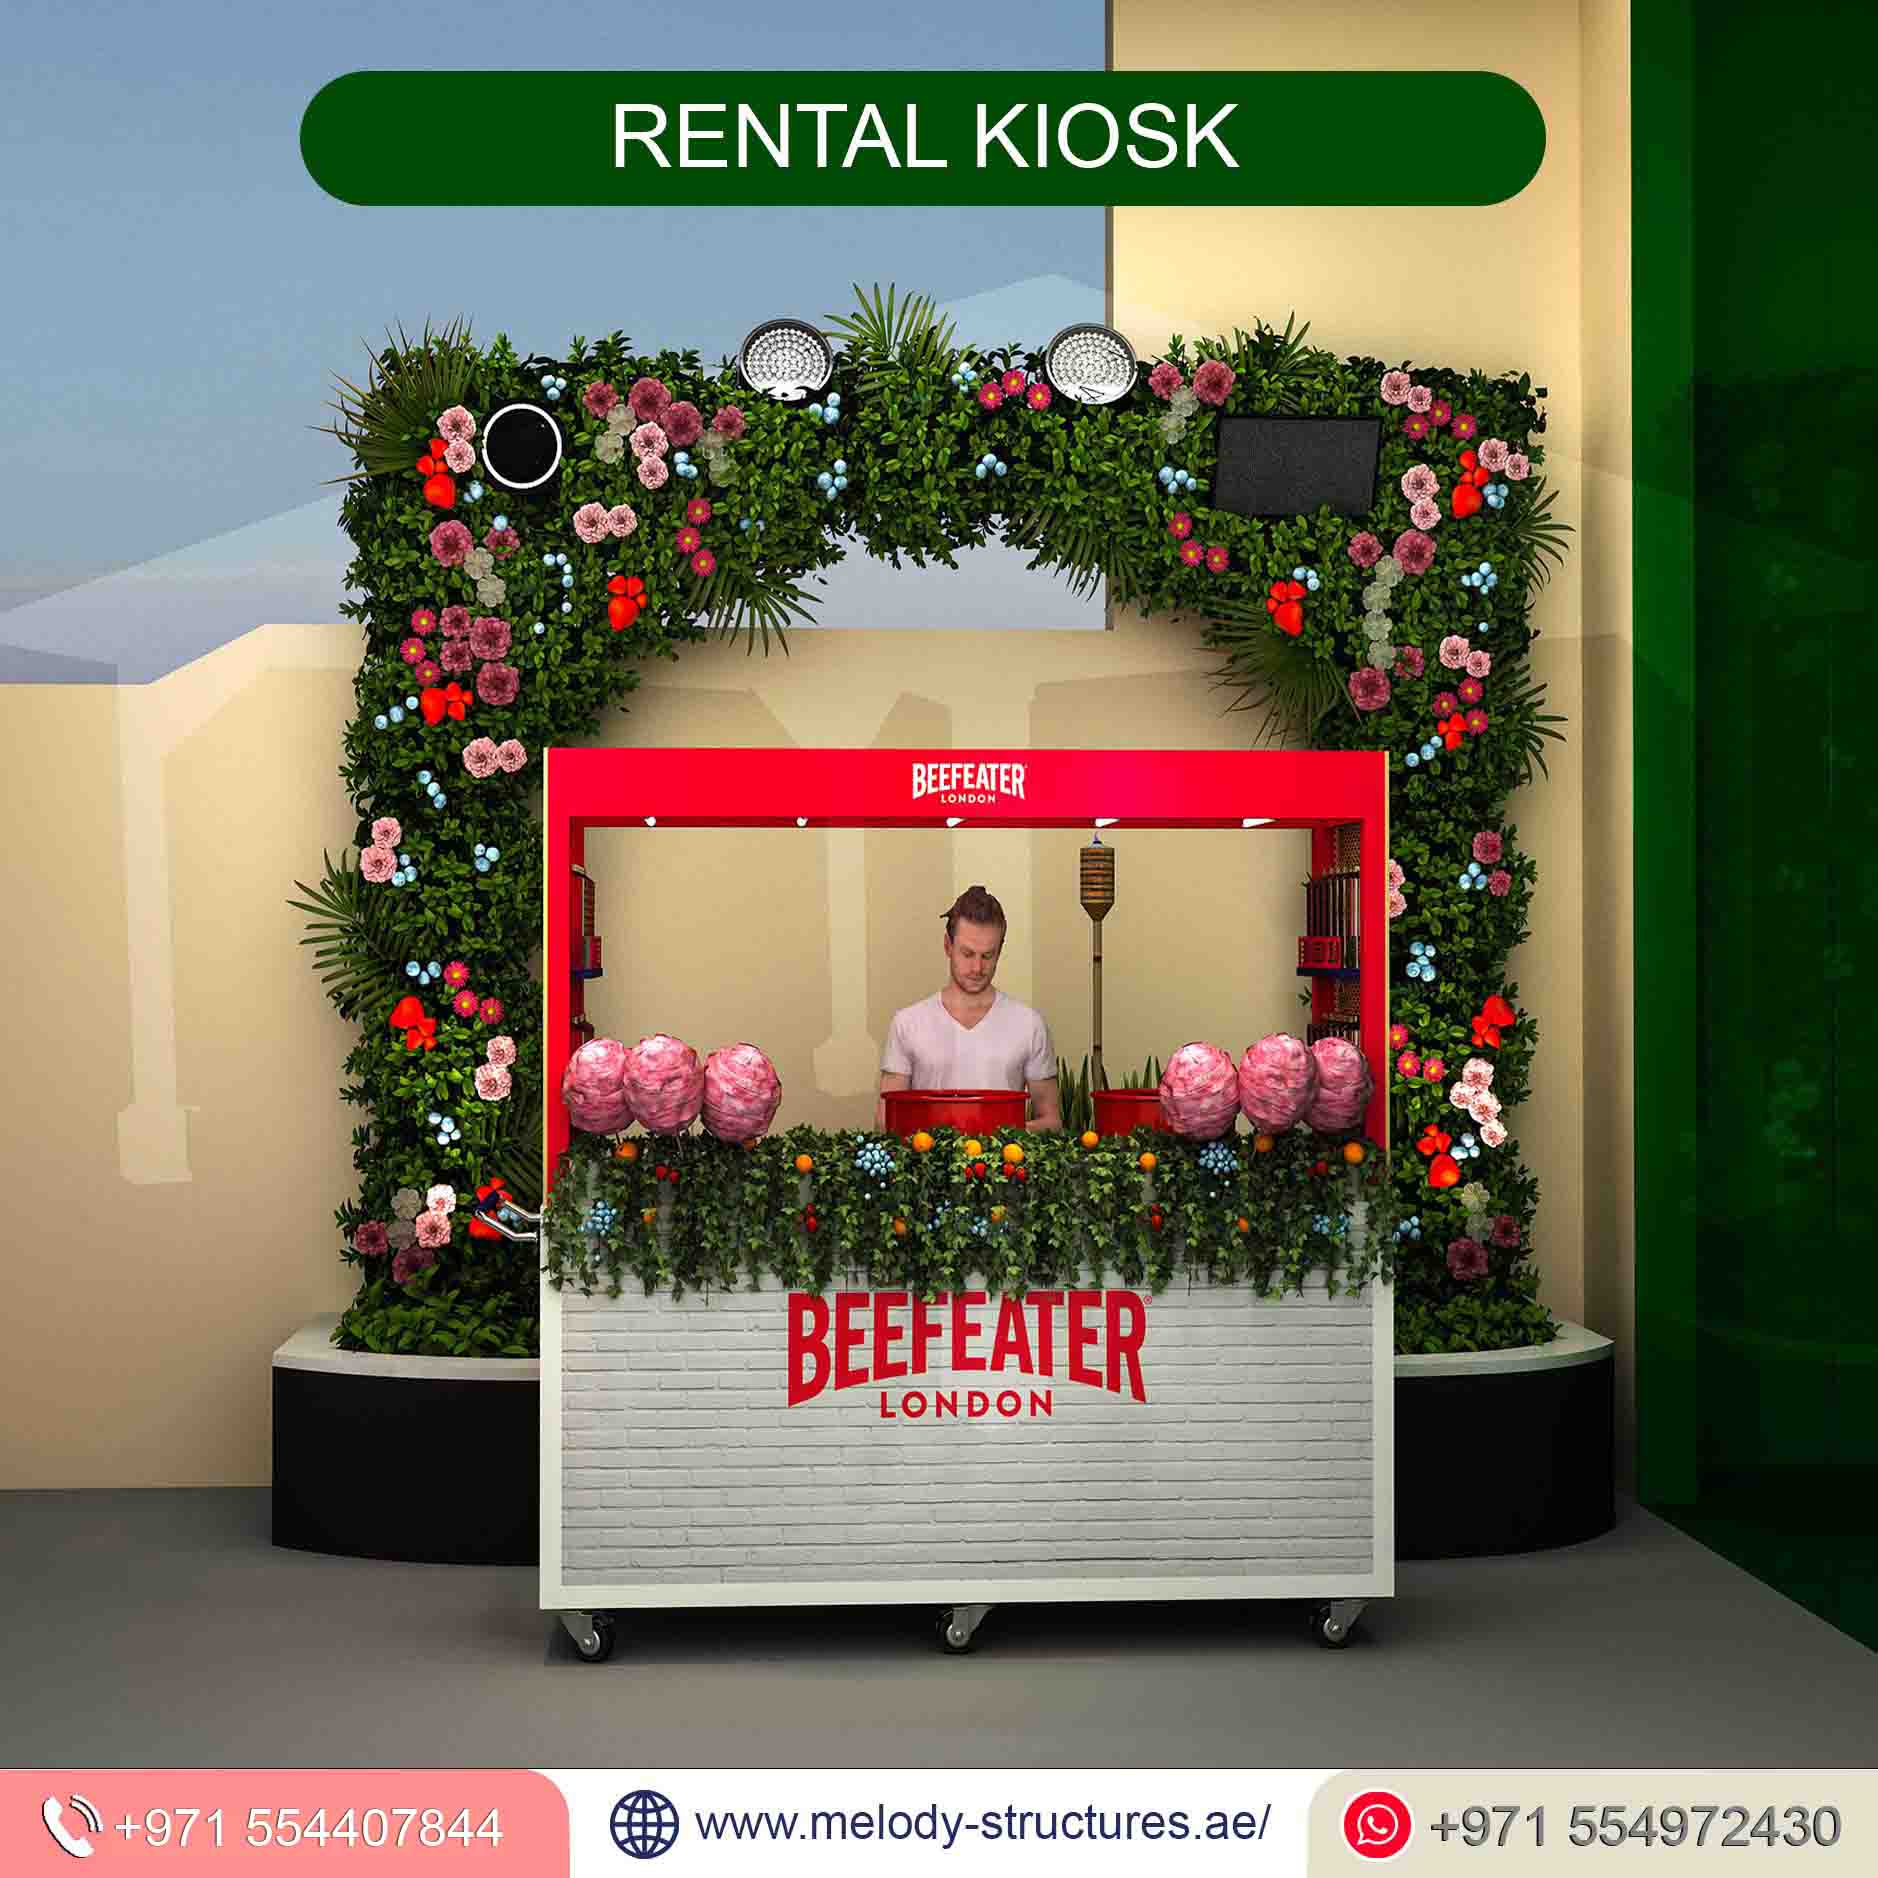 Rental Kiosk Company in UAE, Rental Kiosk For Events (5).jpg